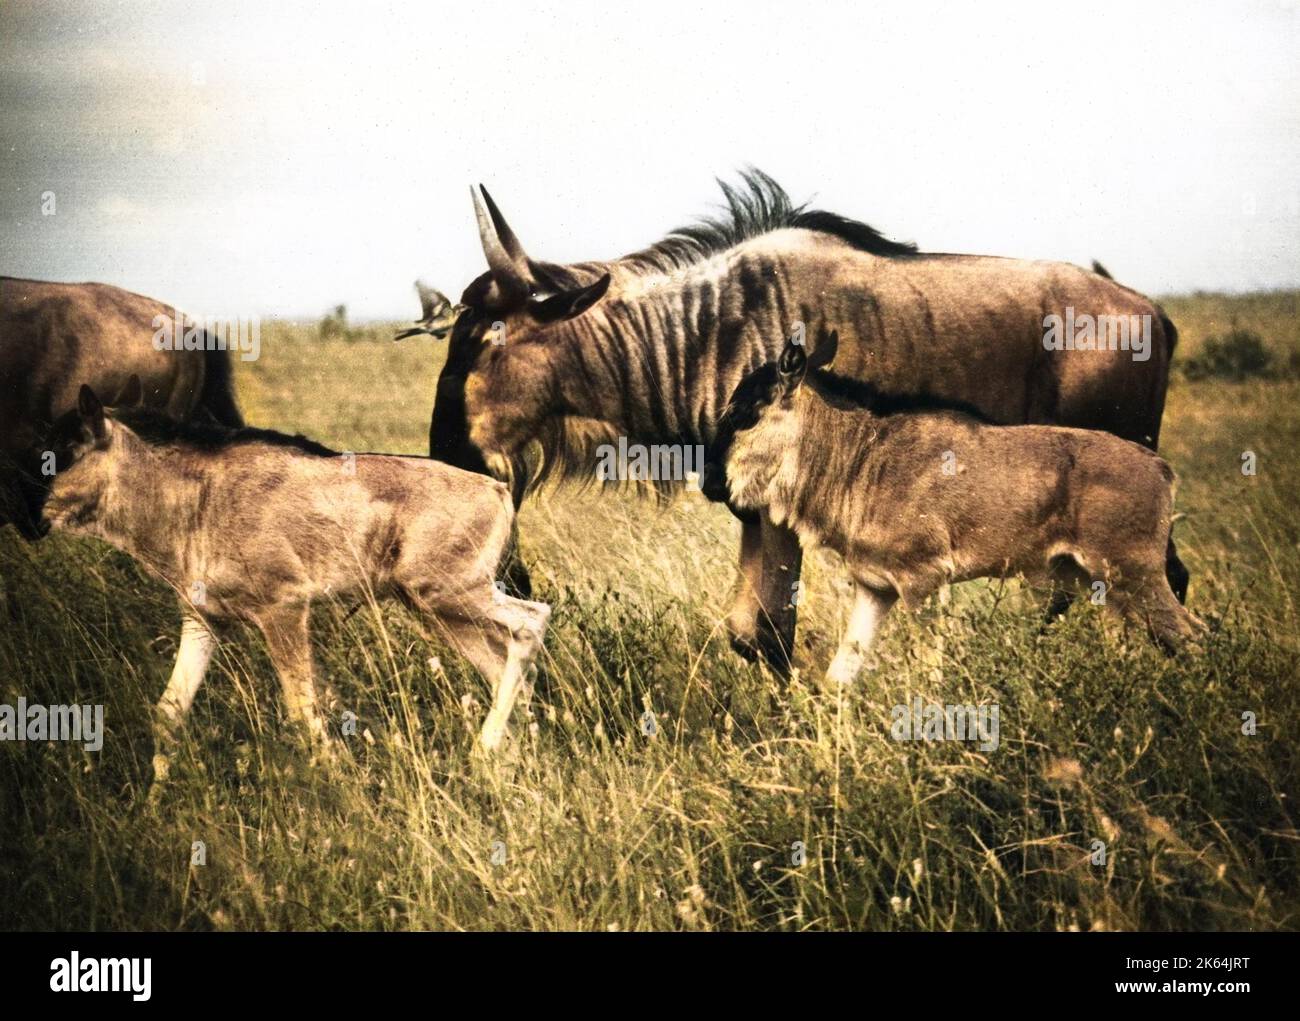 gnu del Kenya, chiamato anche gnu. Un'antilope del genere Connochaetes. Foto Stock